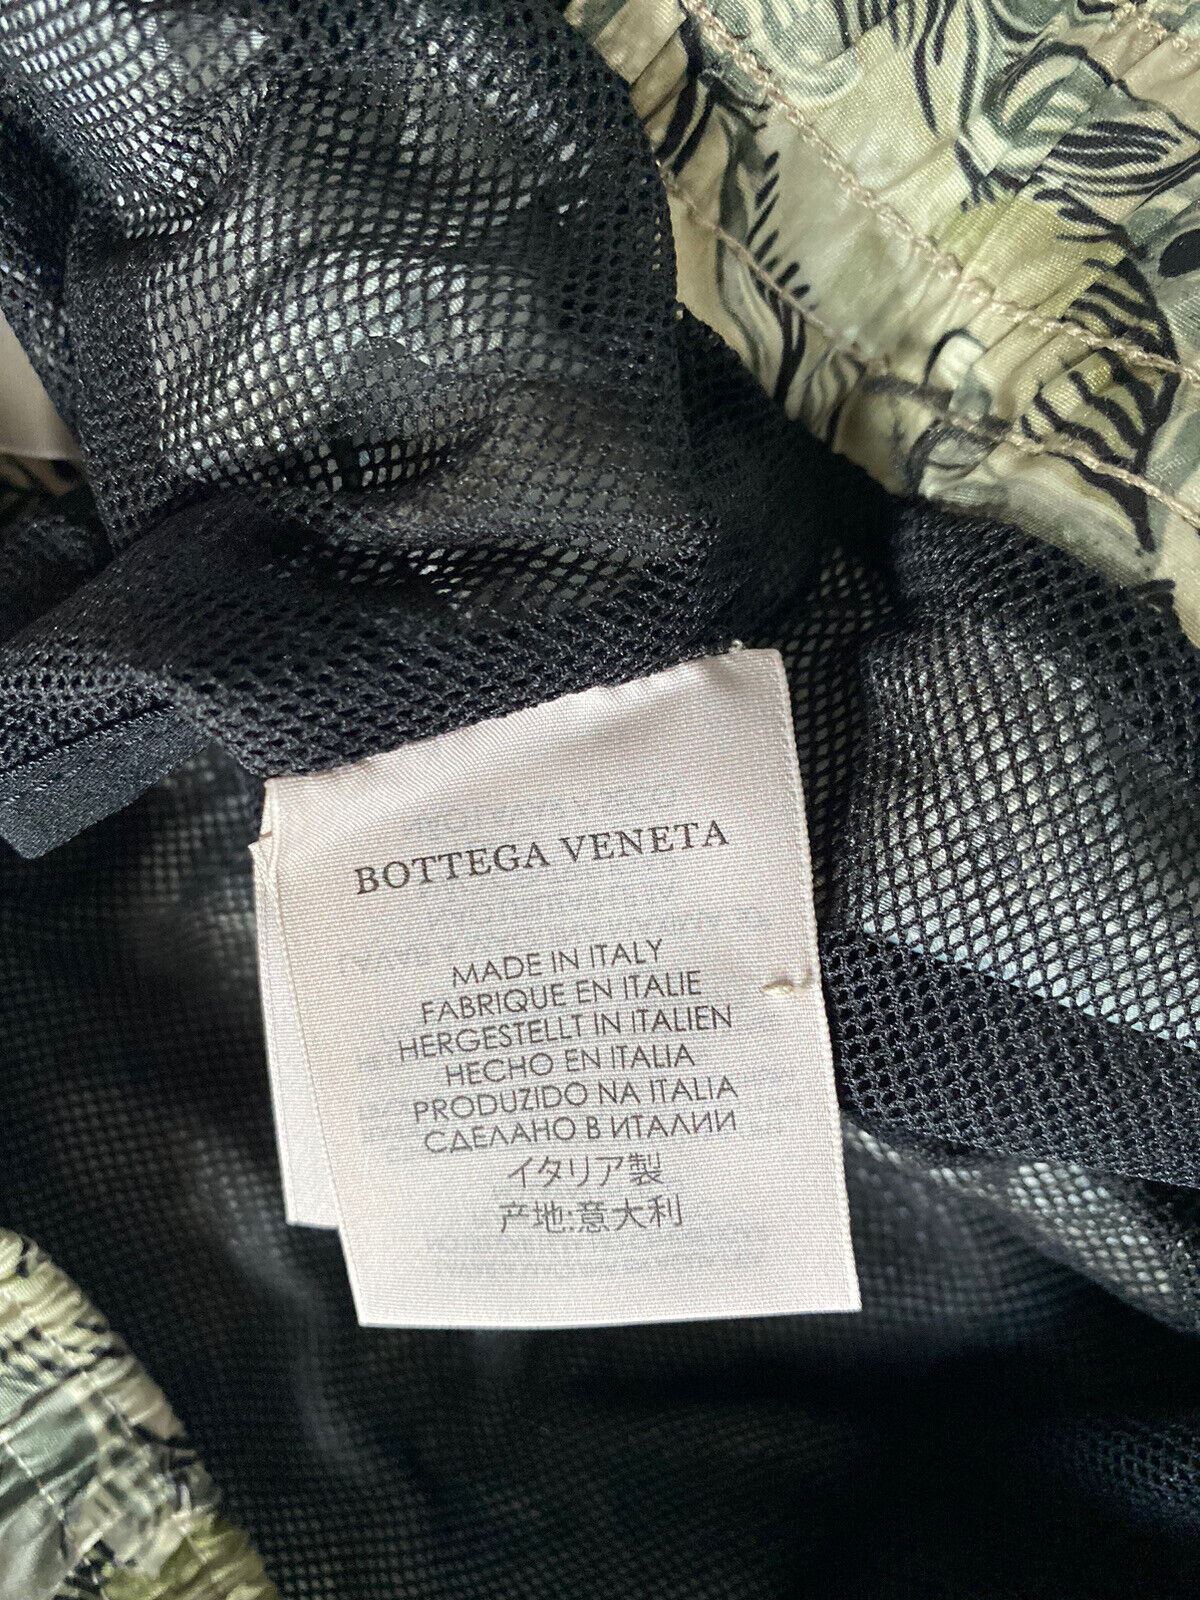 Мужские шорты-боксеры рыбье-зеленого цвета Bottega Veneta, размер 2XL, 560949, NWT, 550 долларов США. 